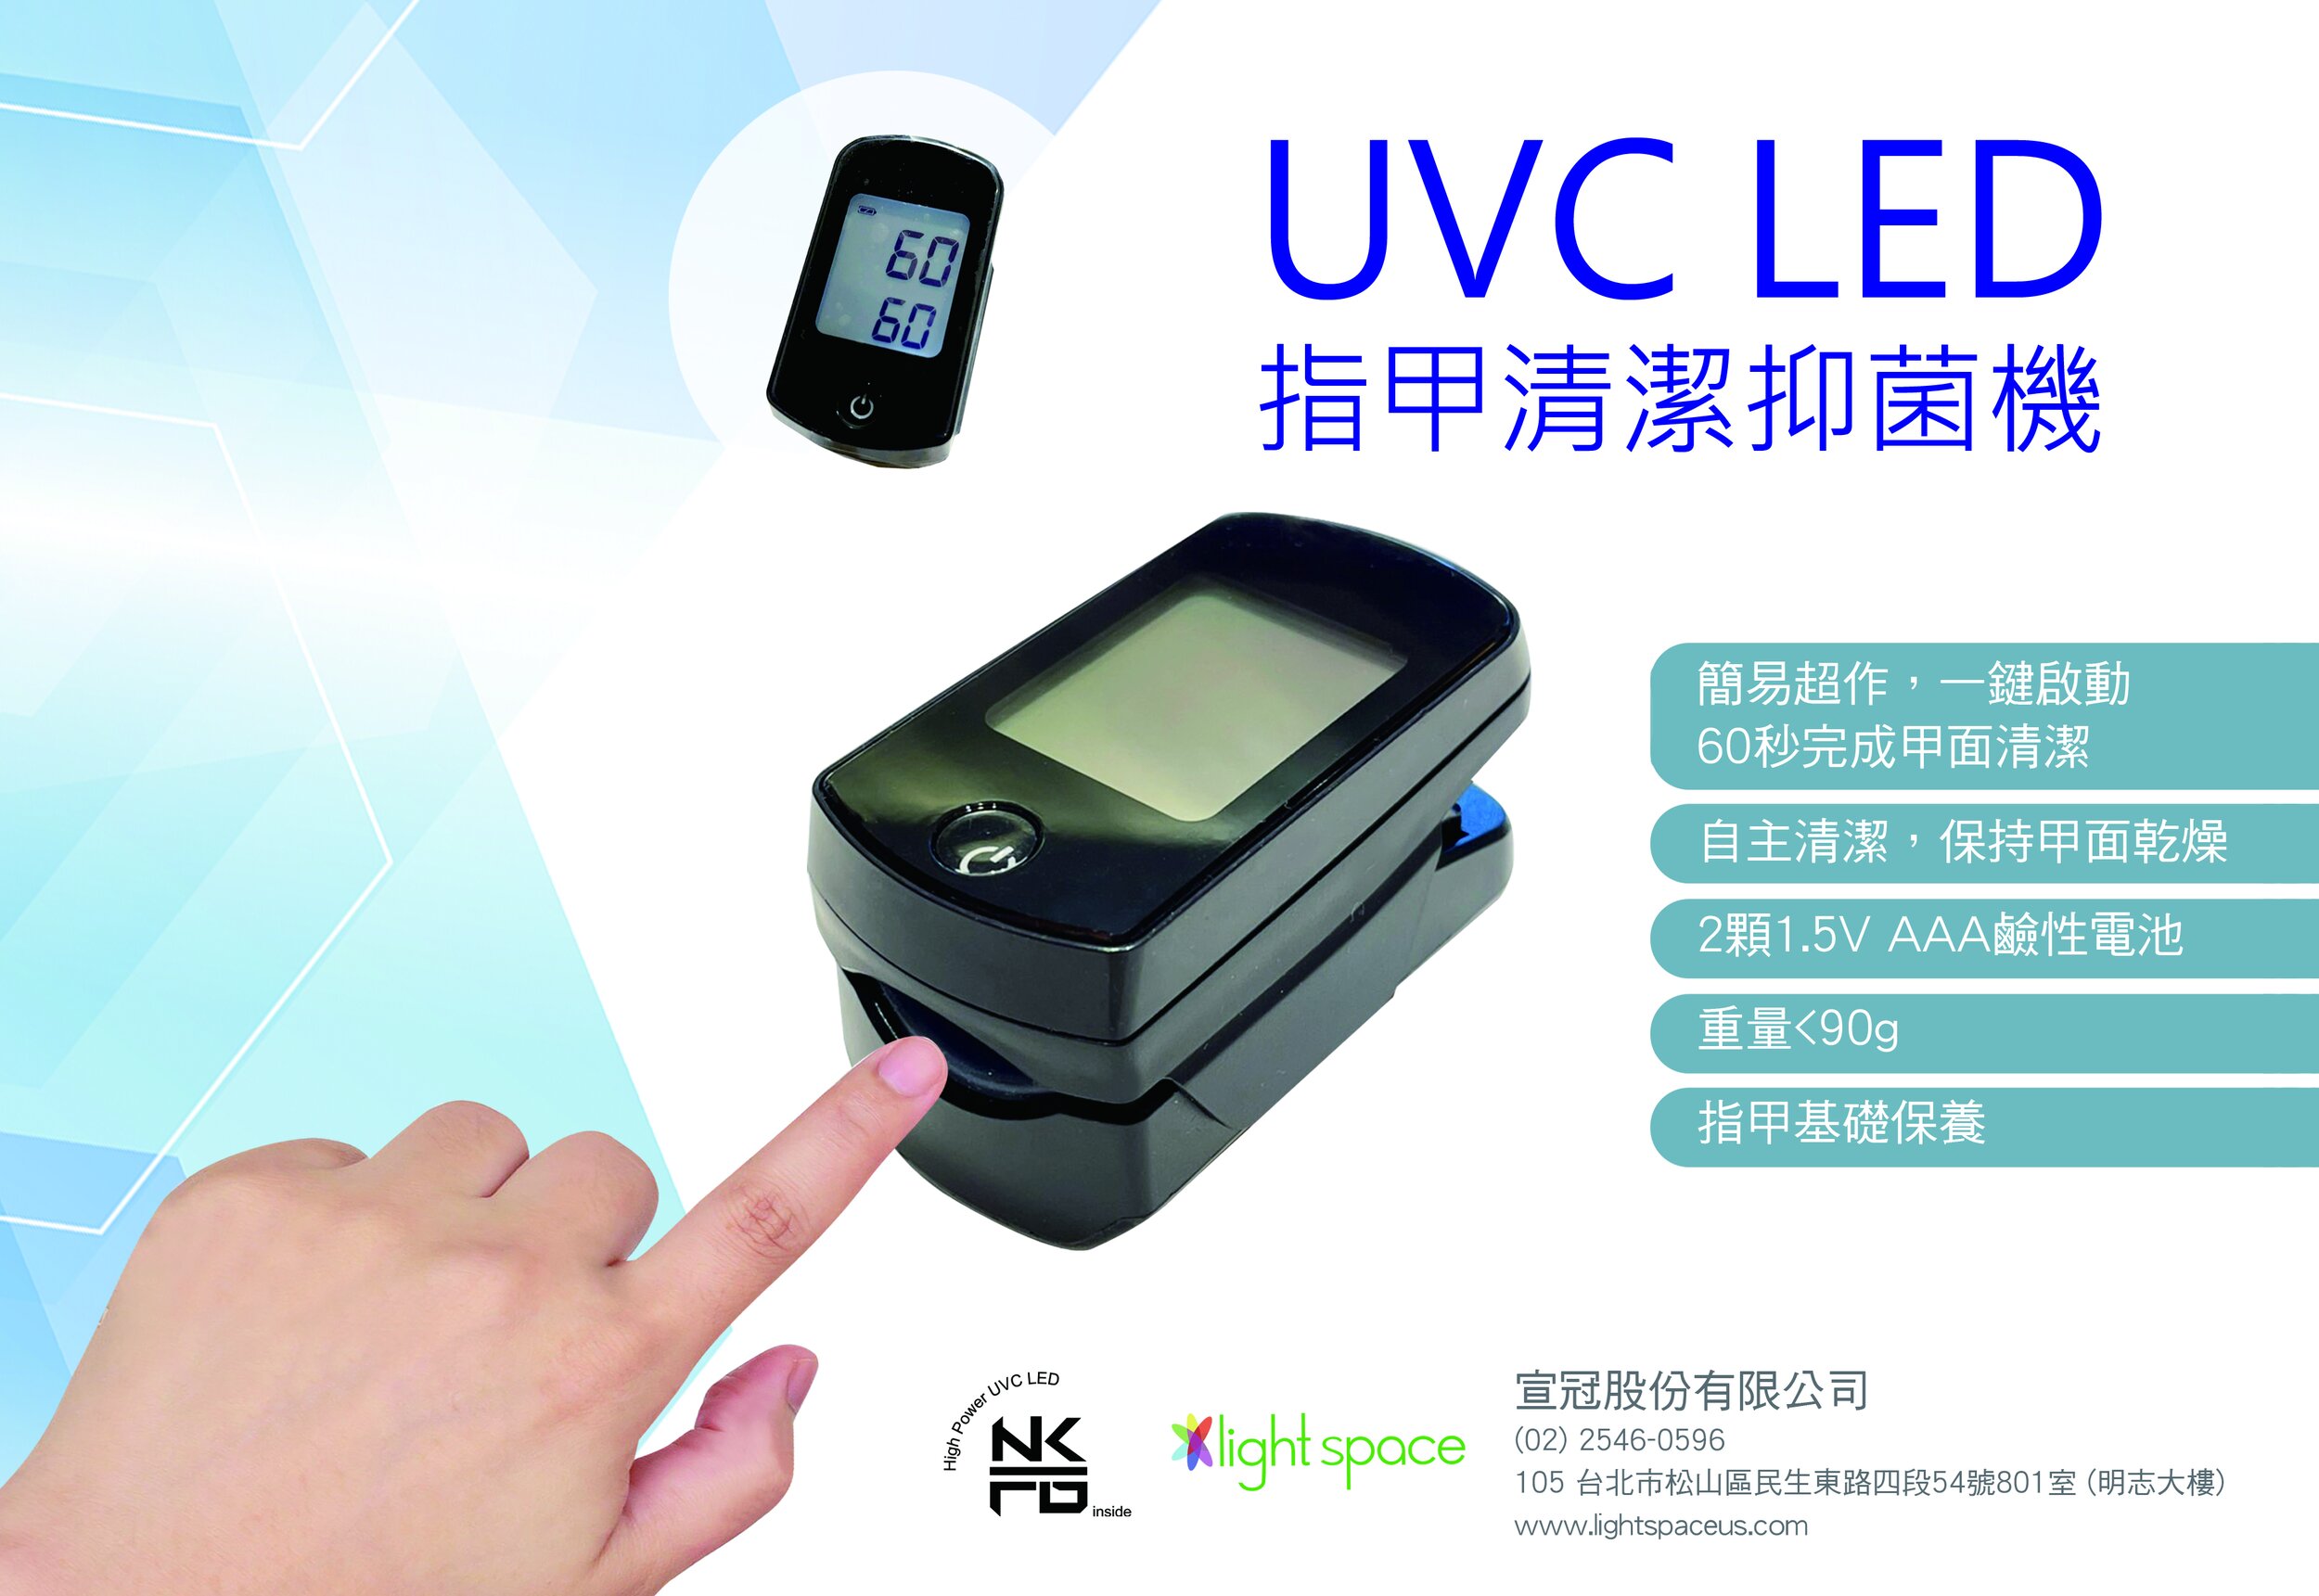 UVC LED指甲抑菌清潔機 — light space inc